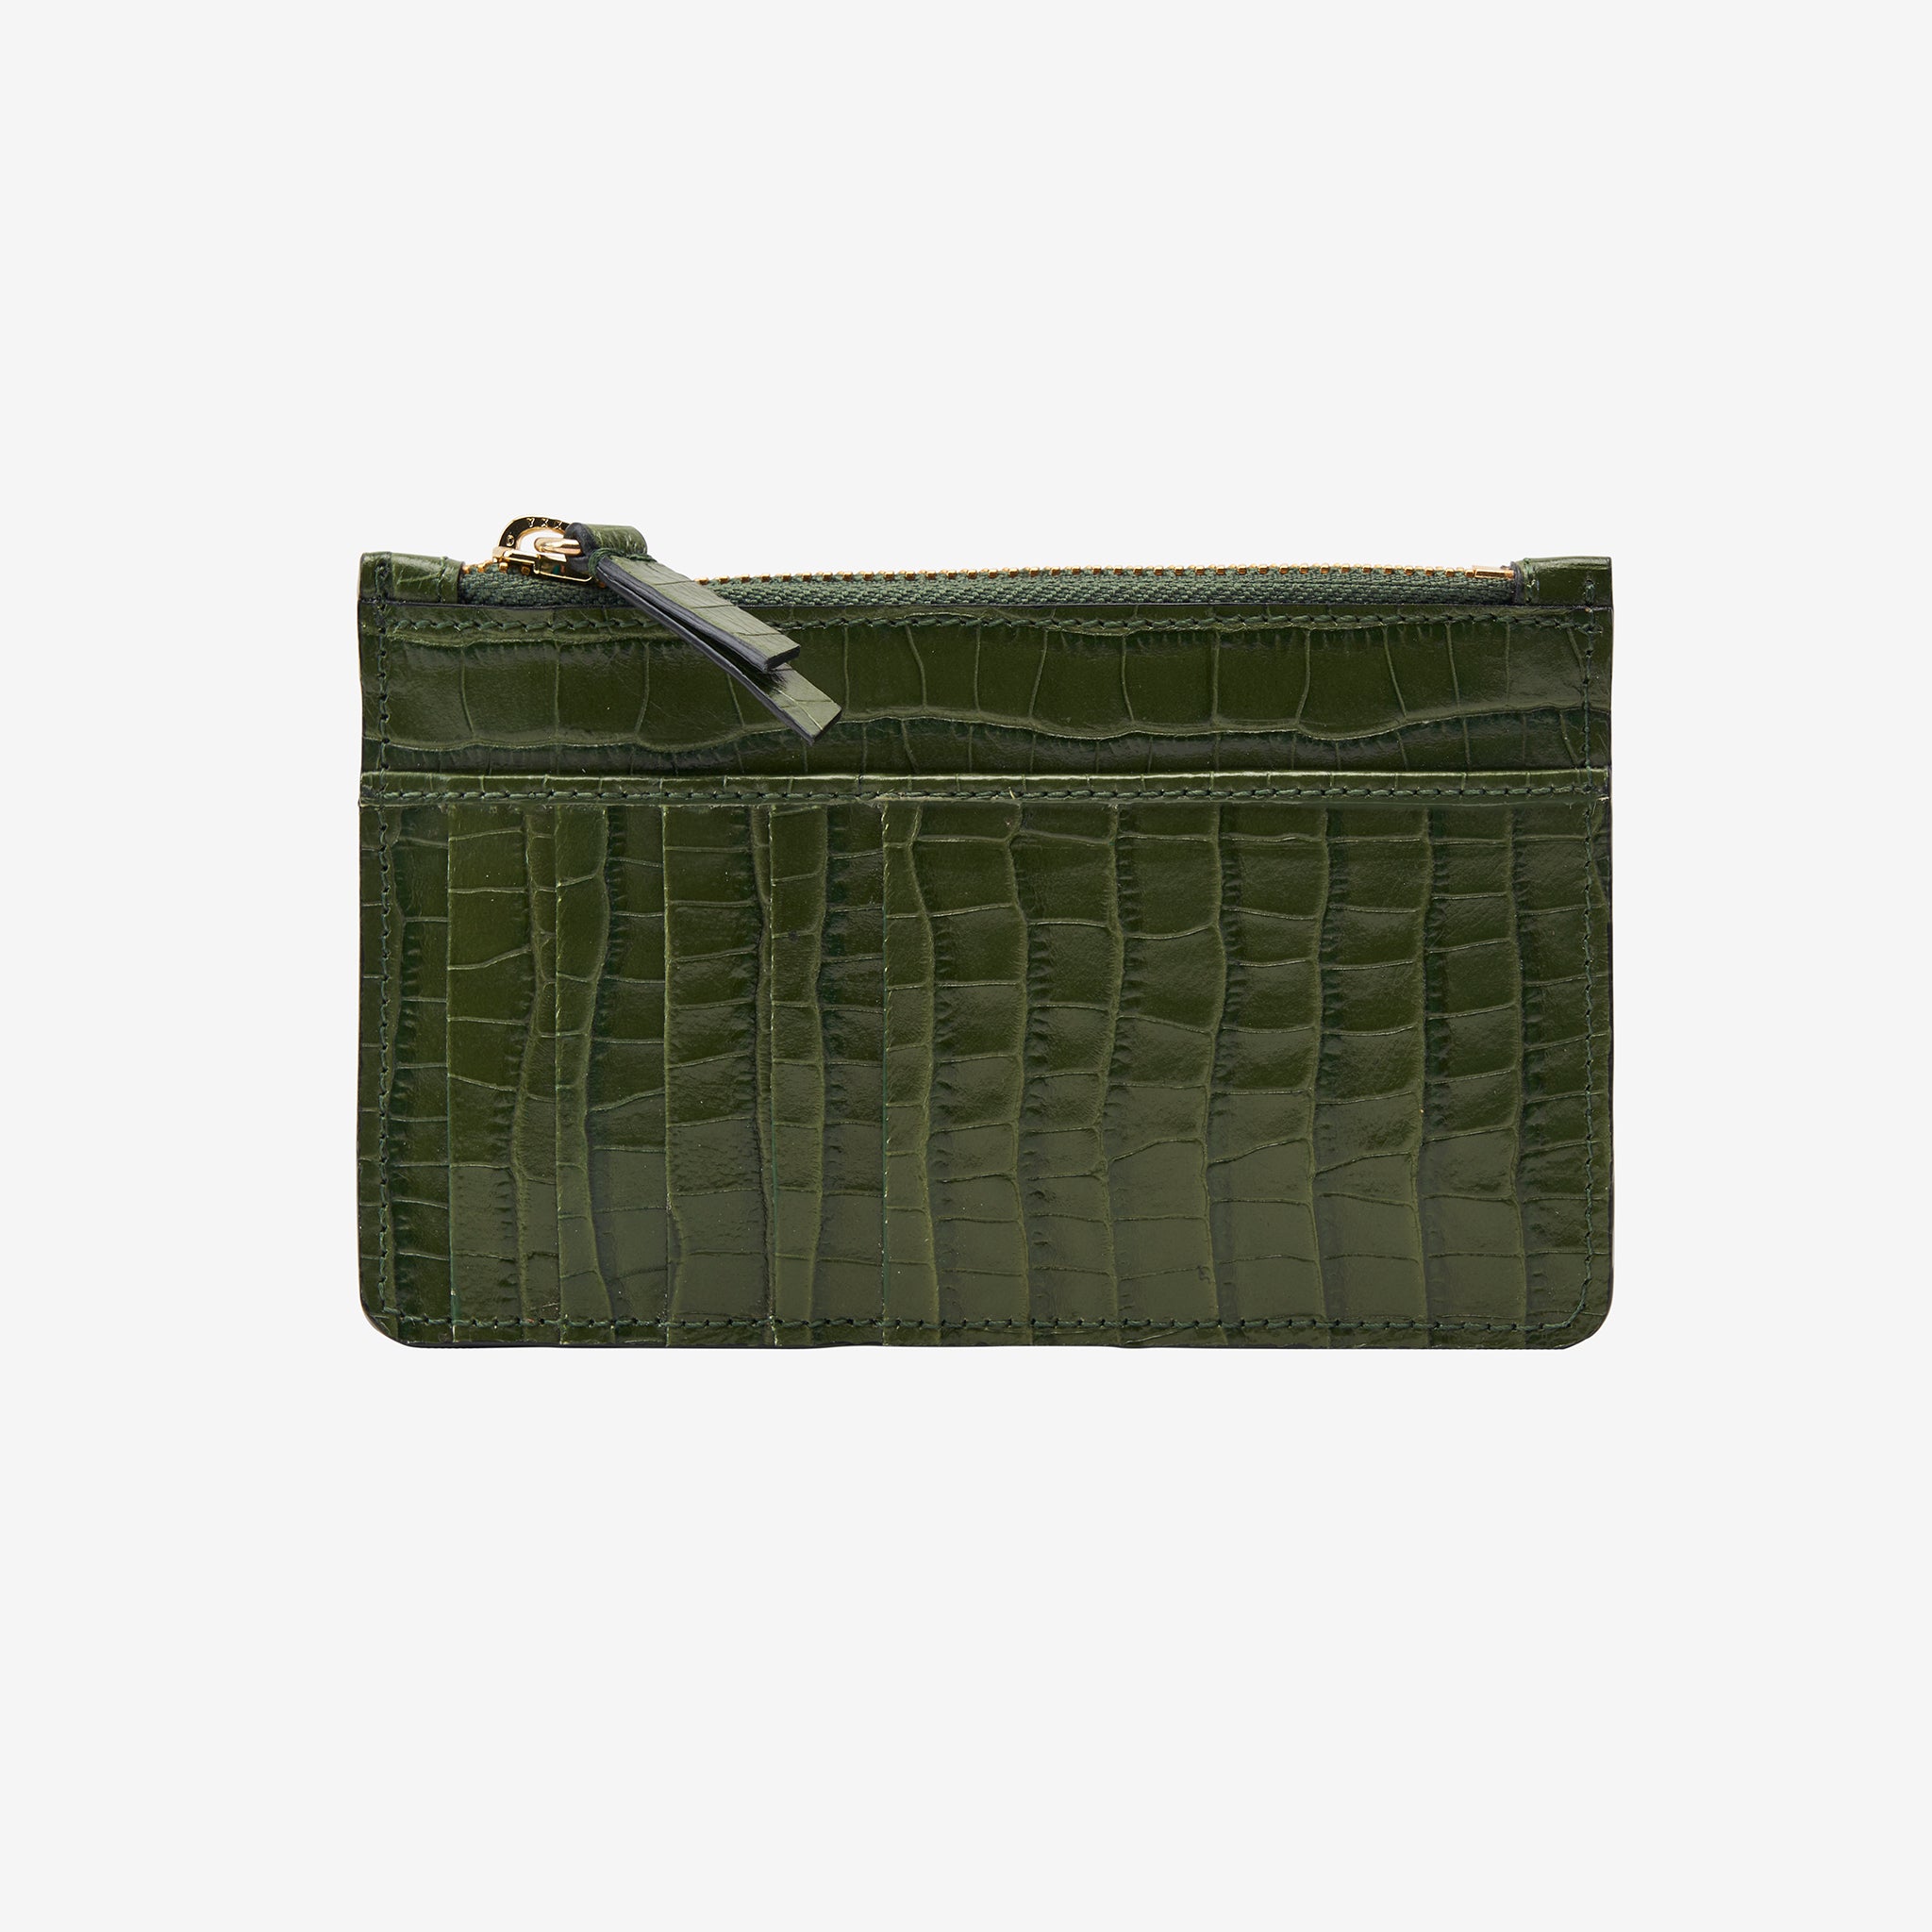 Quinn Phone Bag - Dark Green Croc